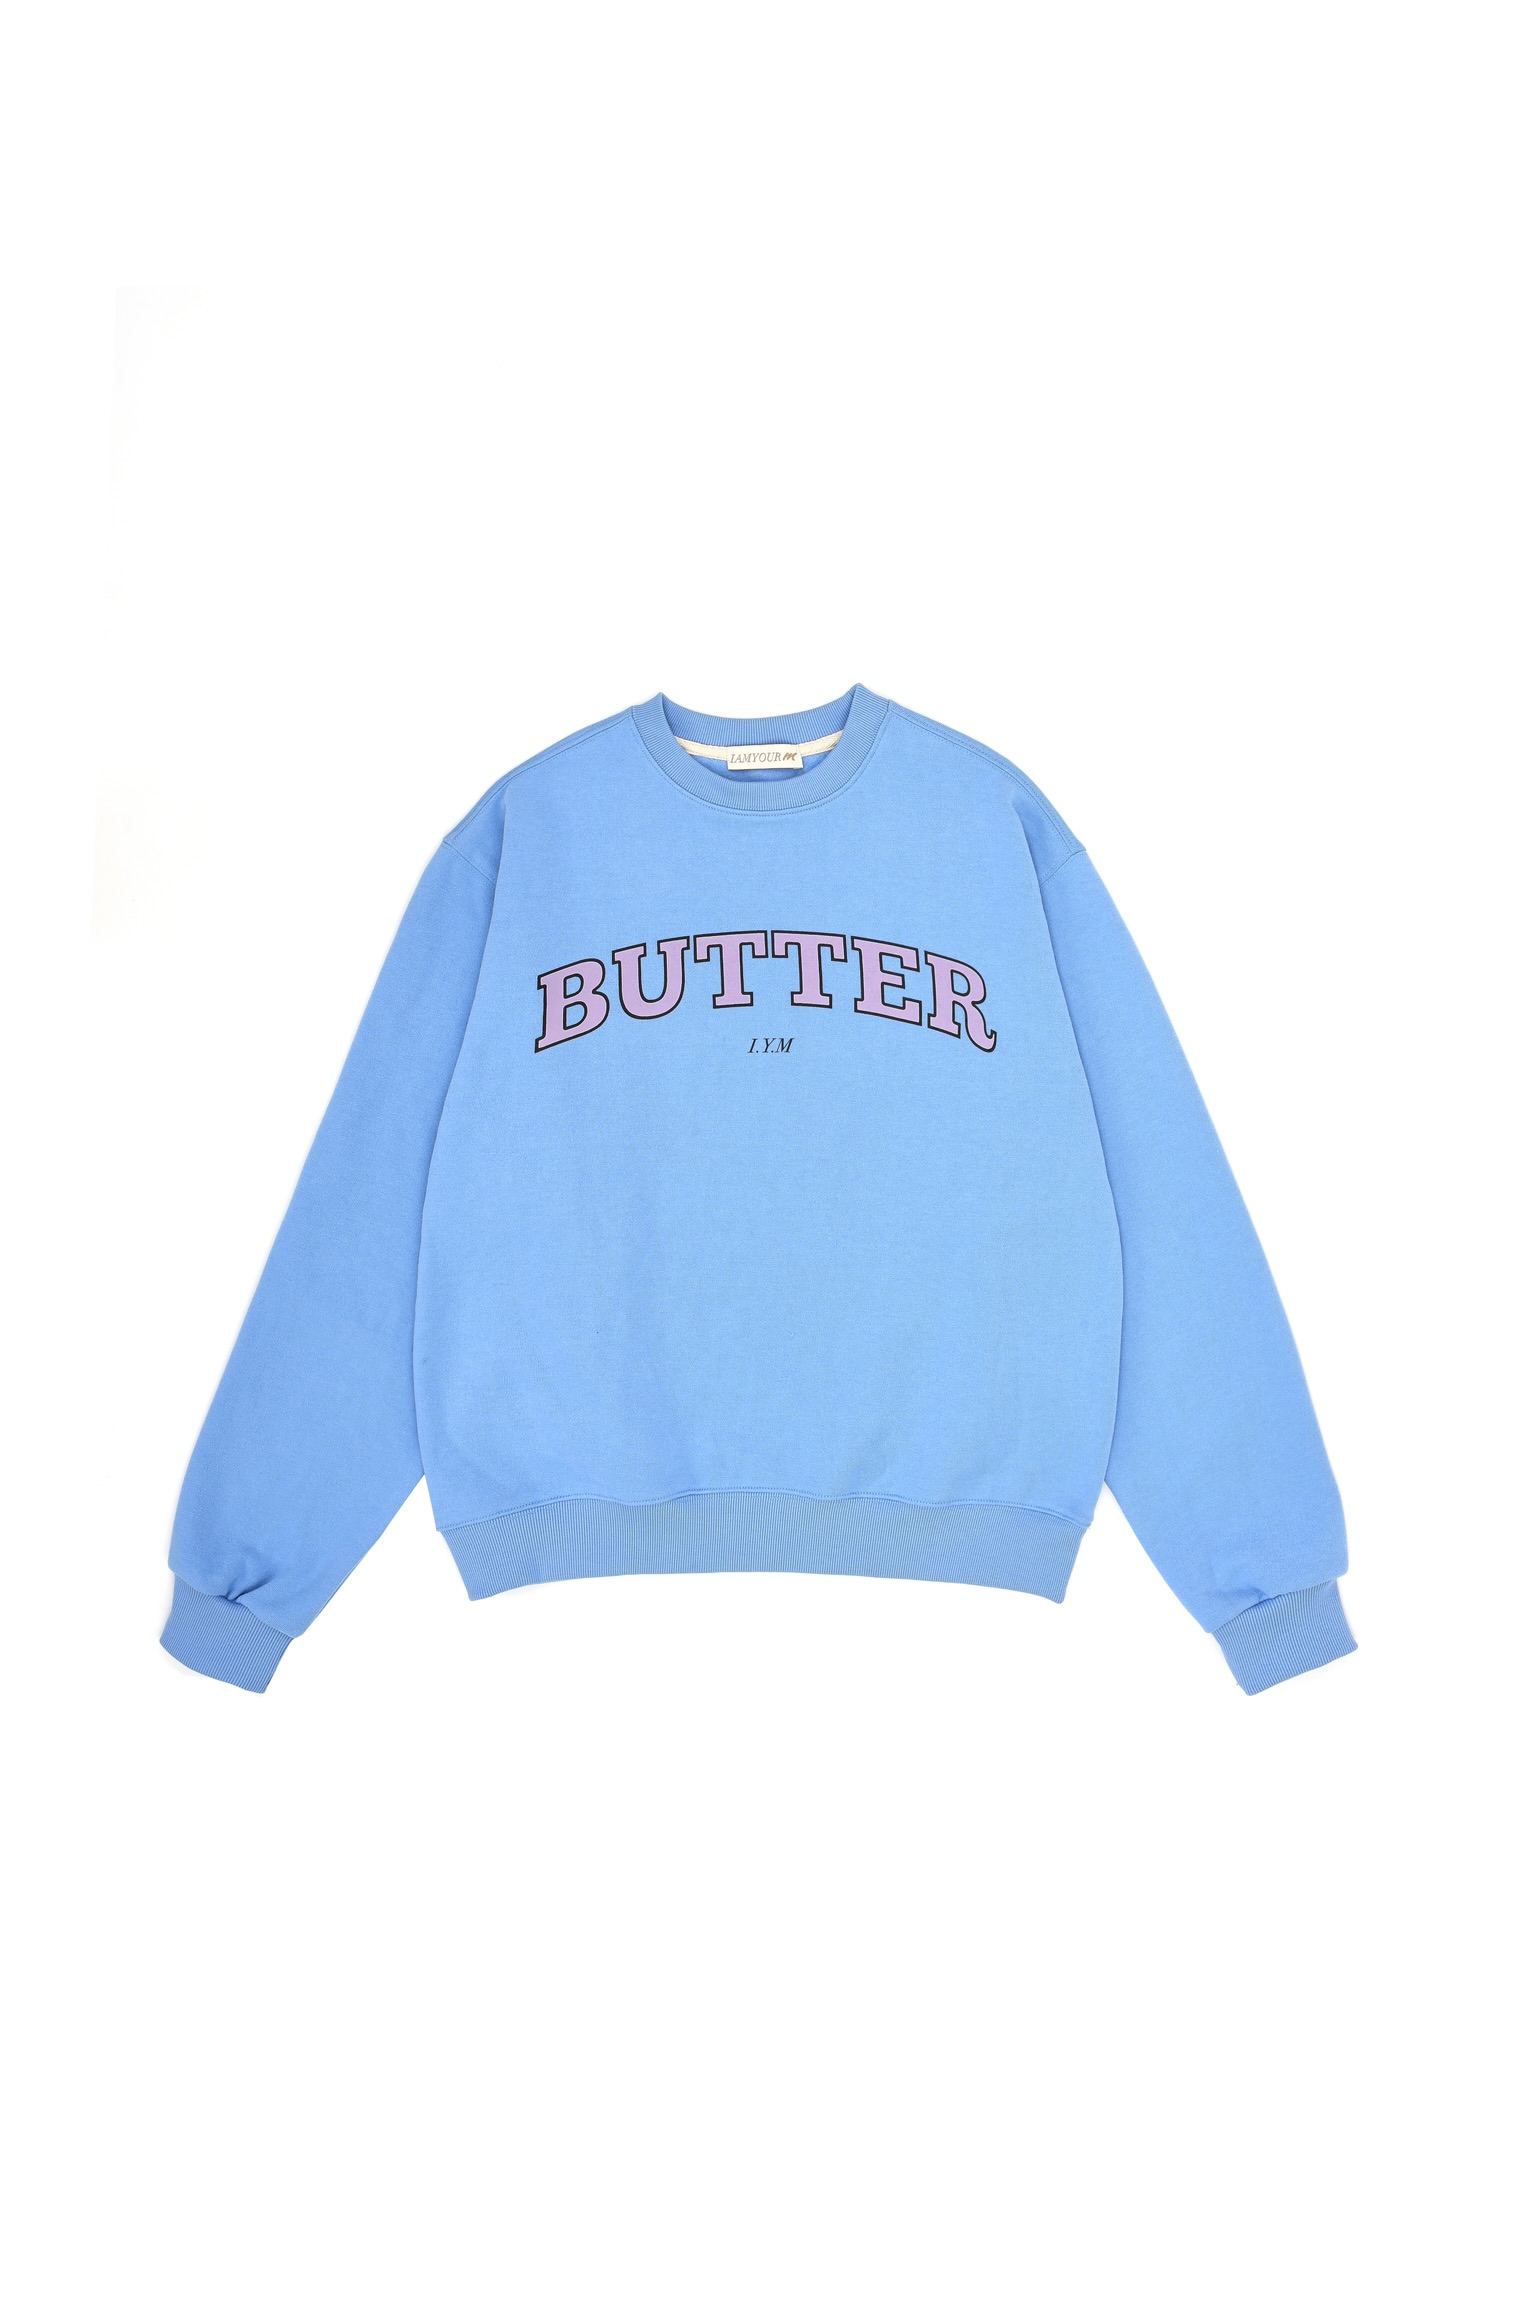 30%--Butter Sweatshirts (sky blue)